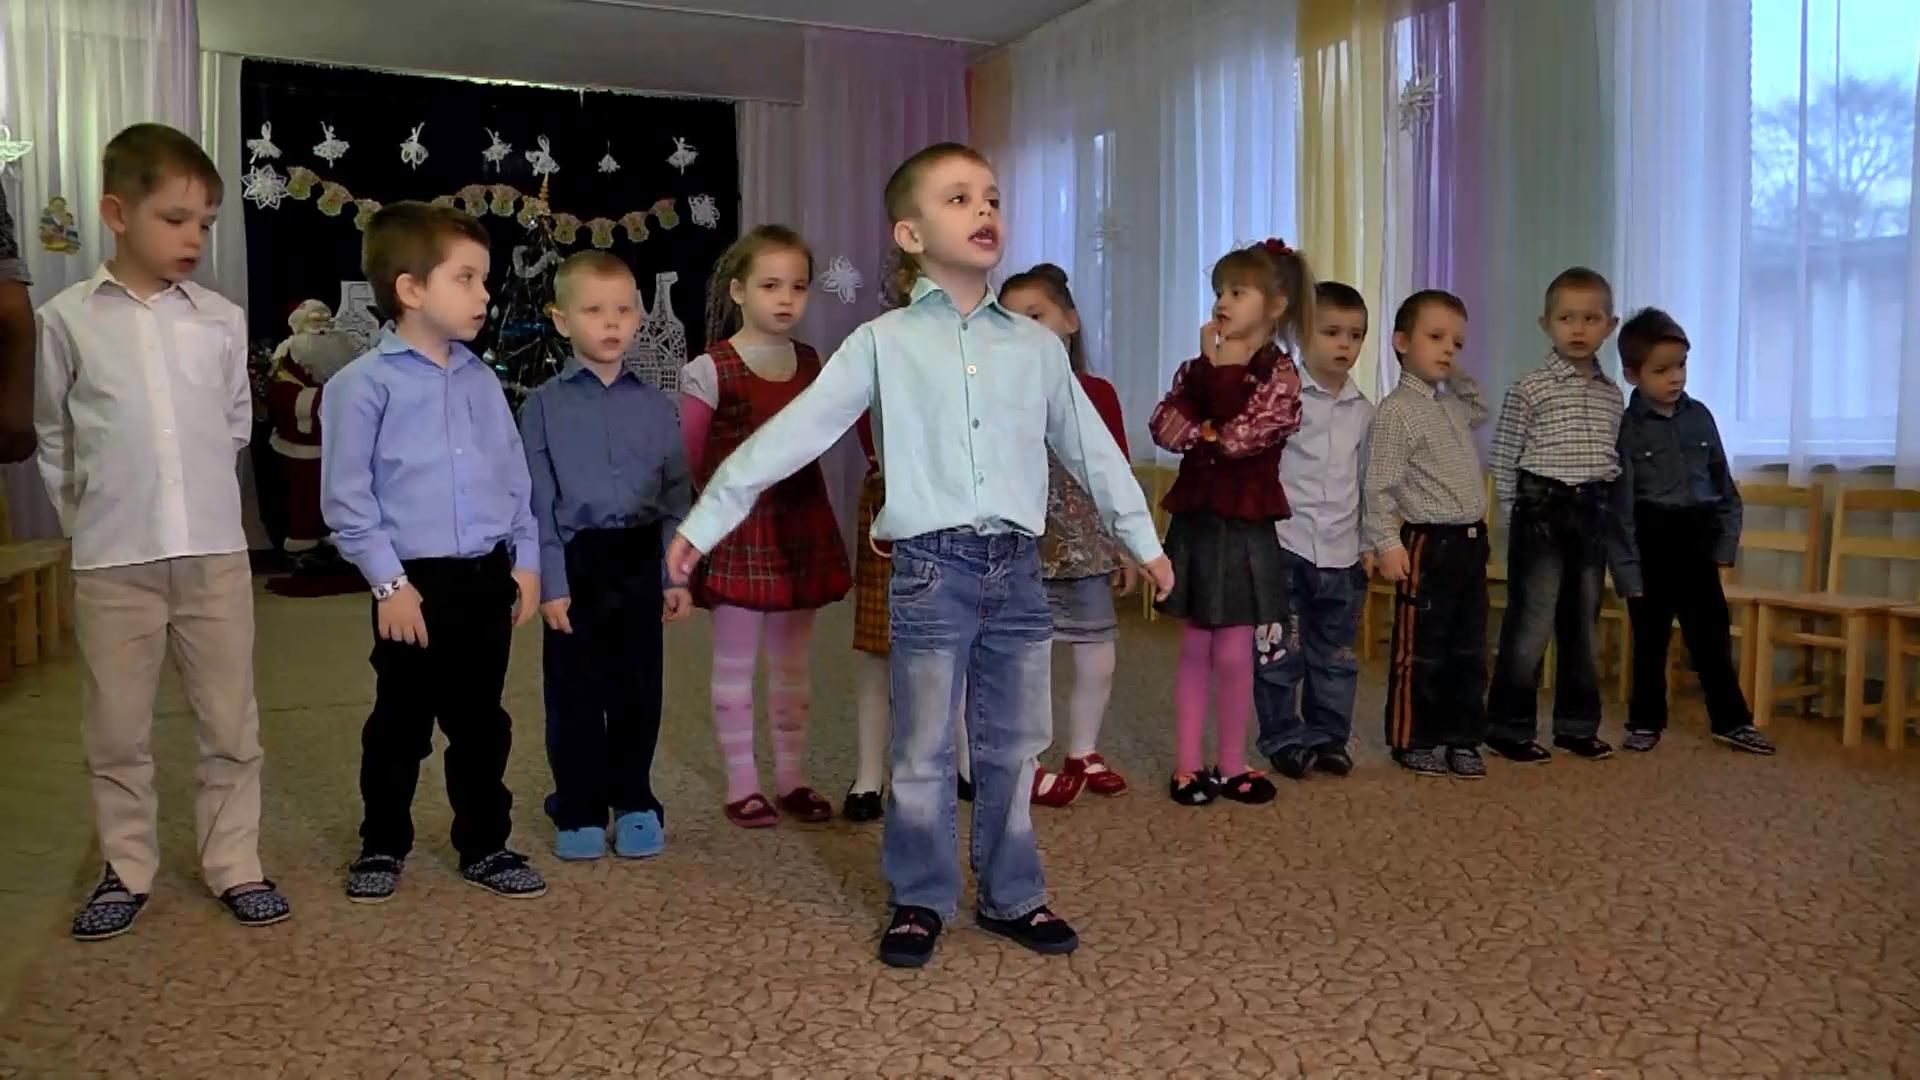 Пожилые люди устроили настоящий праздник для воспитанников детдома во Львове